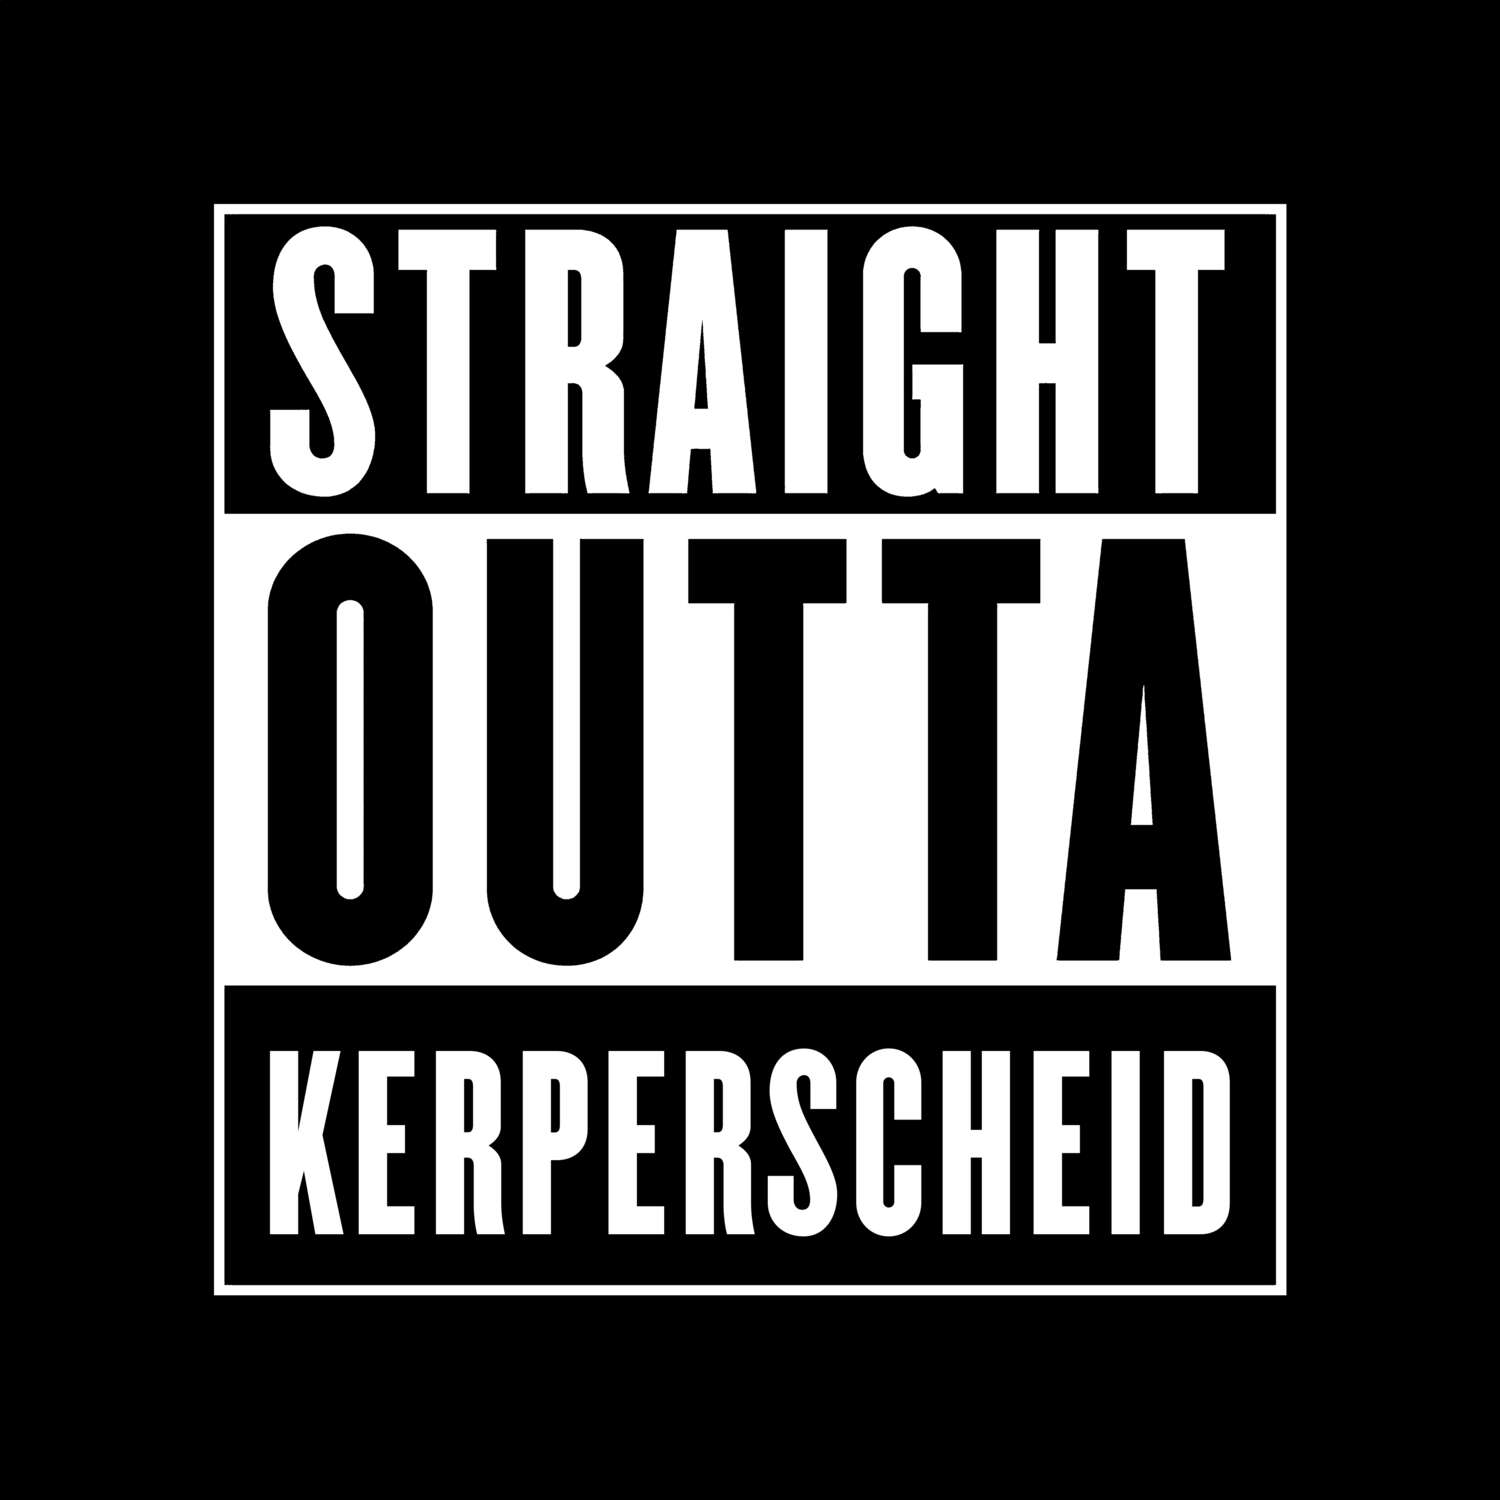 Kerperscheid T-Shirt »Straight Outta«